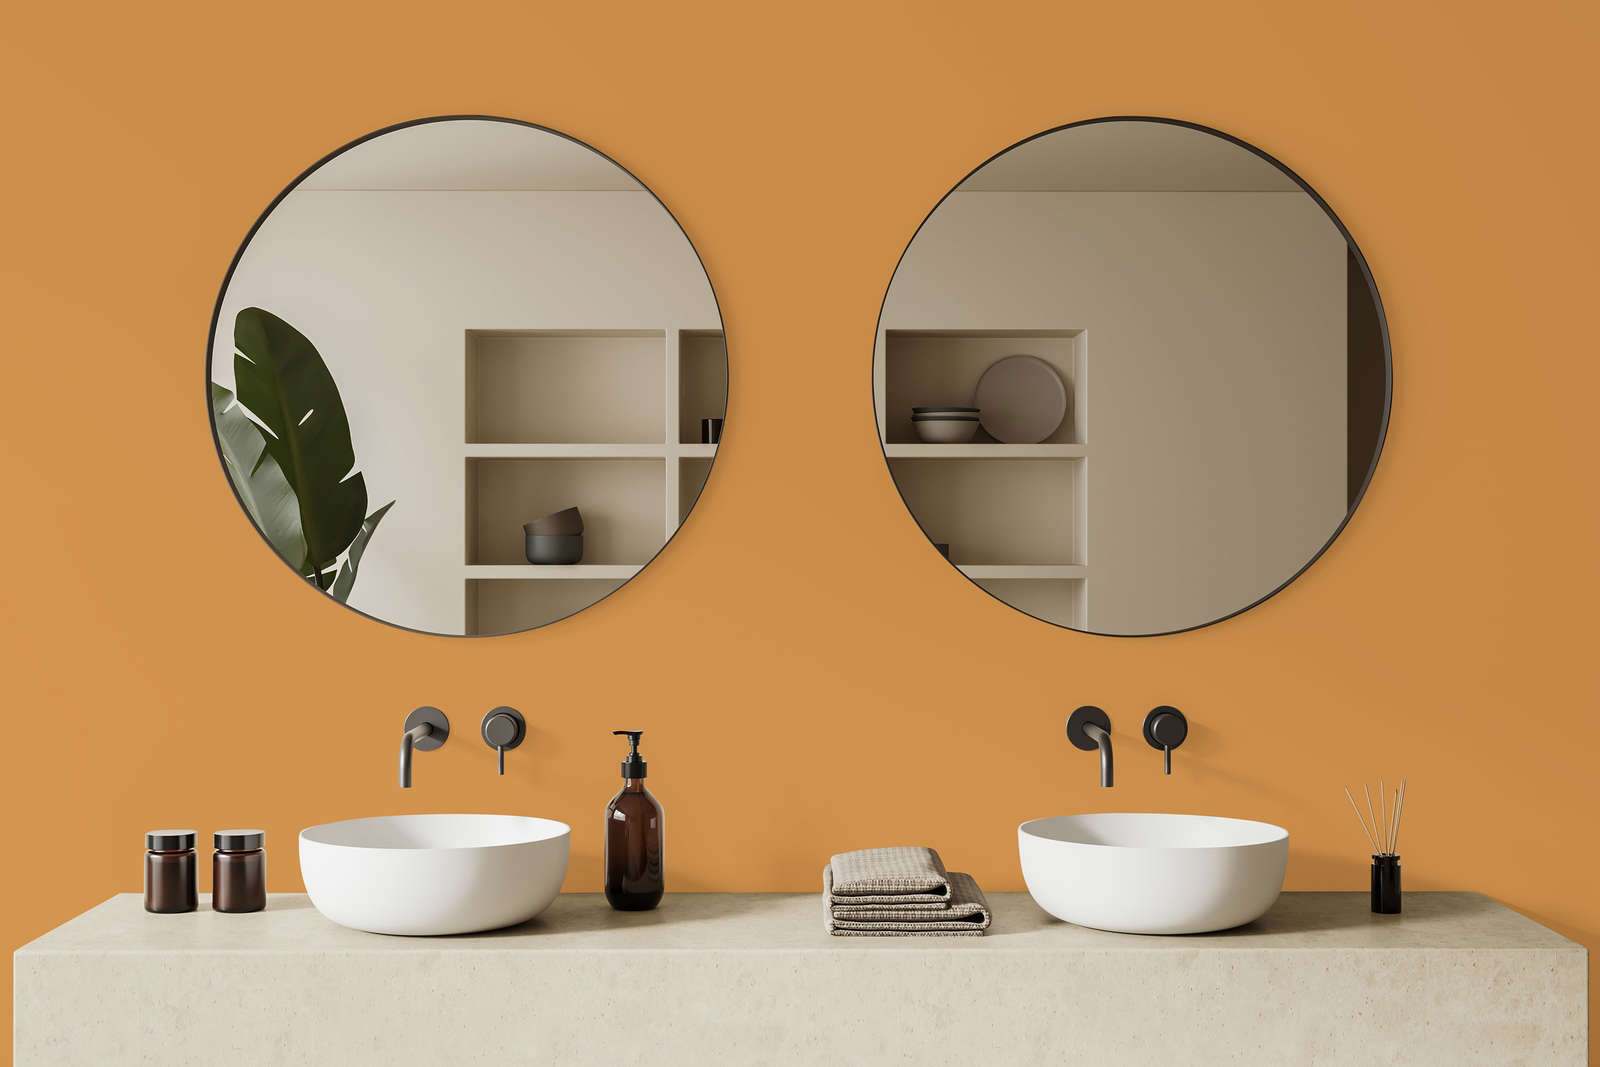             Premium Wall Paint Warm Orange »Beige Orange/Sassy Saffron« NW813 – 2.5 litre
        